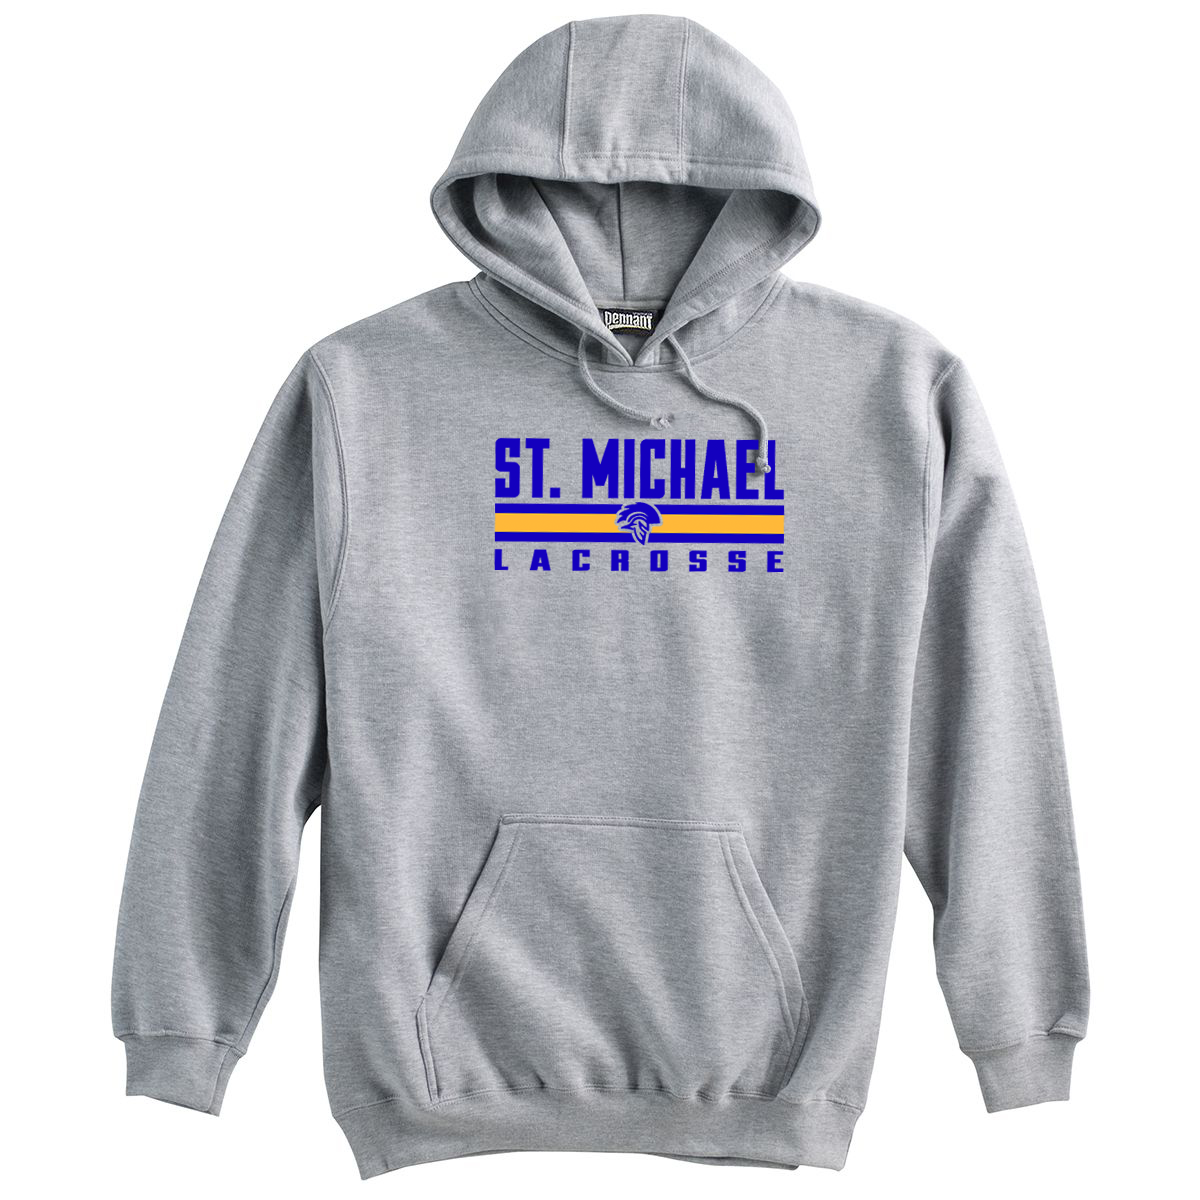 St. Michael Lacrosse Sweatshirt